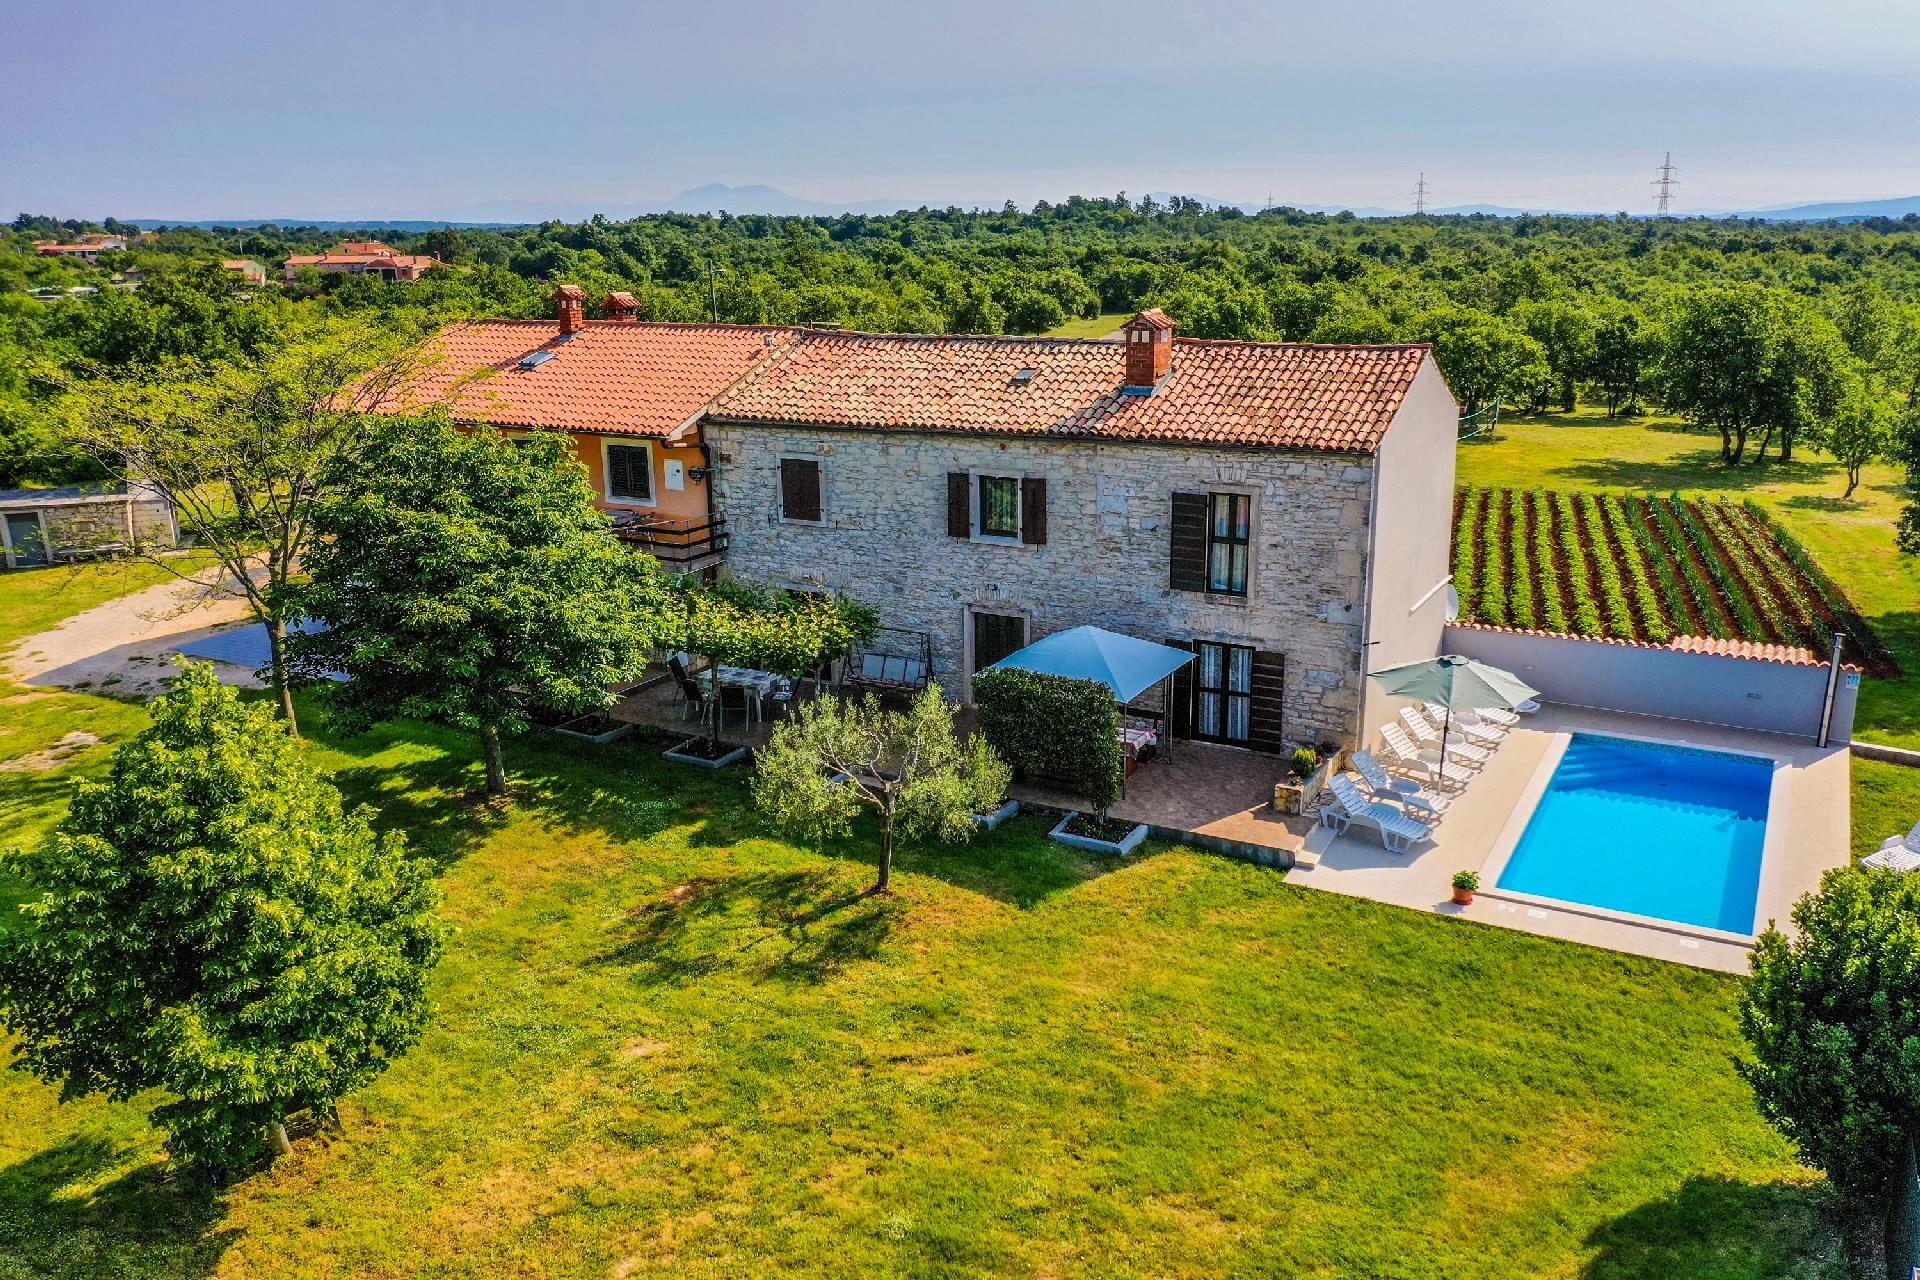 Schönes Haus mit großer grüner Umg Ferienhaus in Kroatien